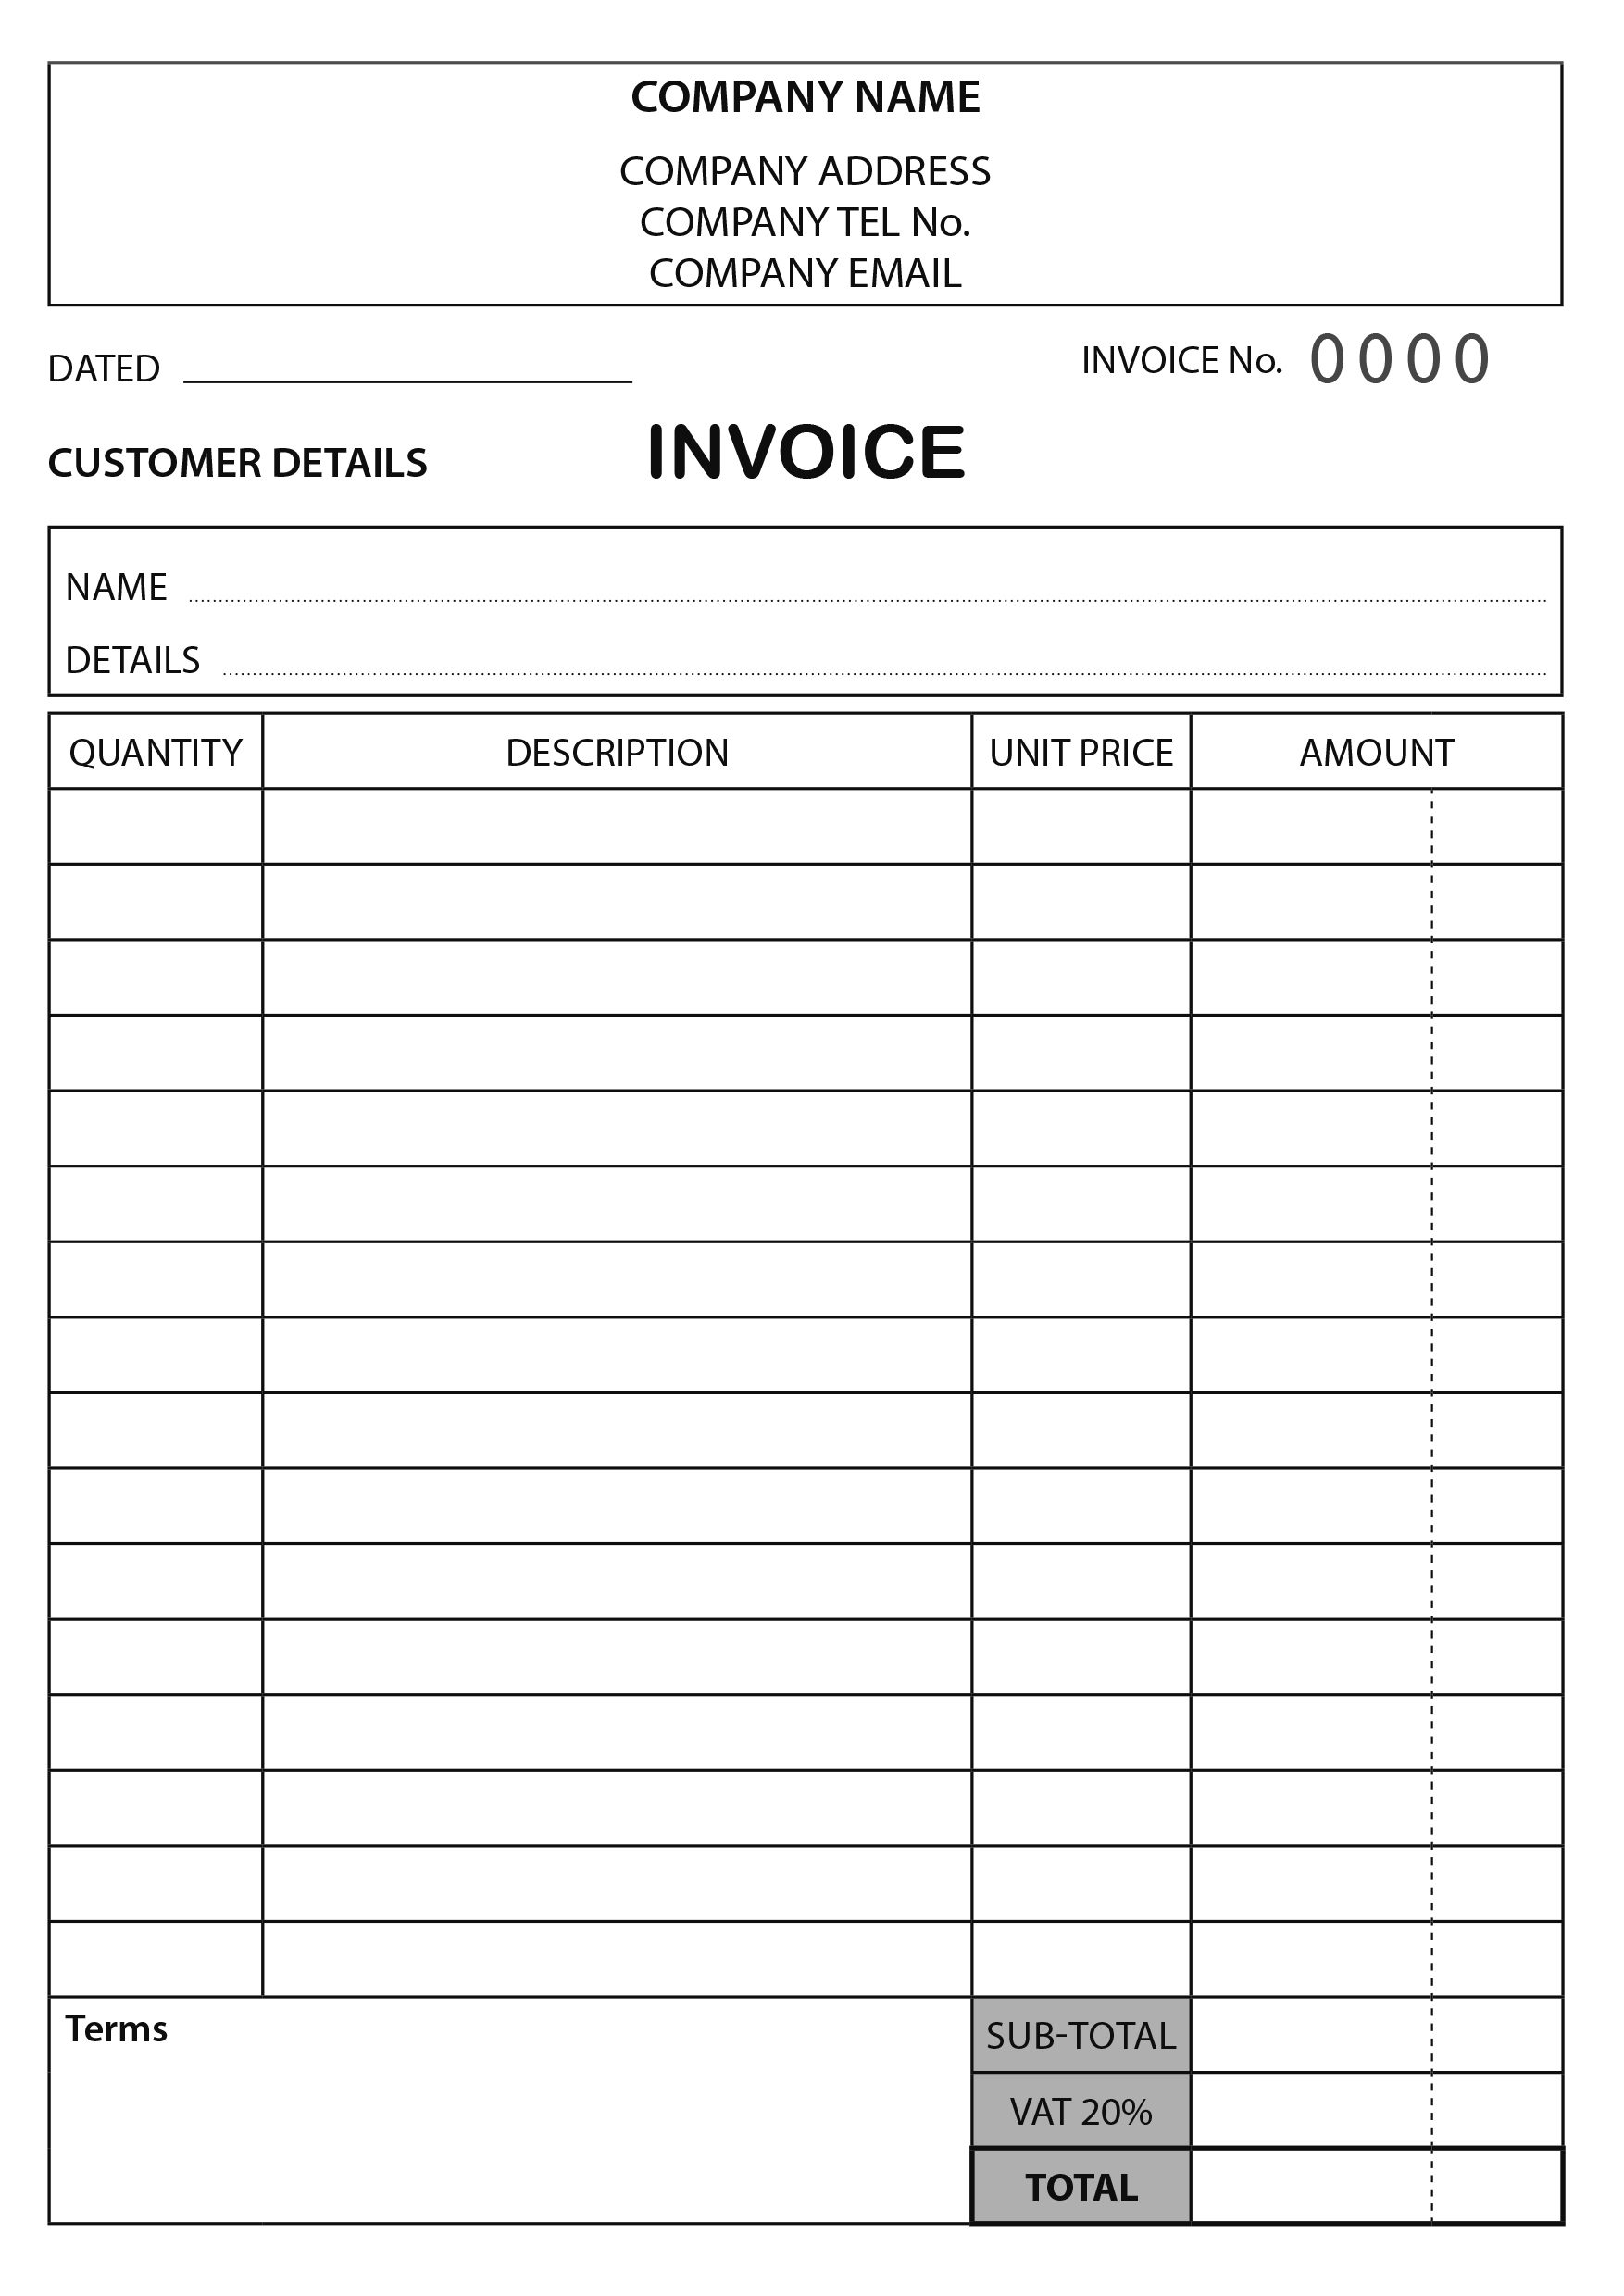 Invoice 1